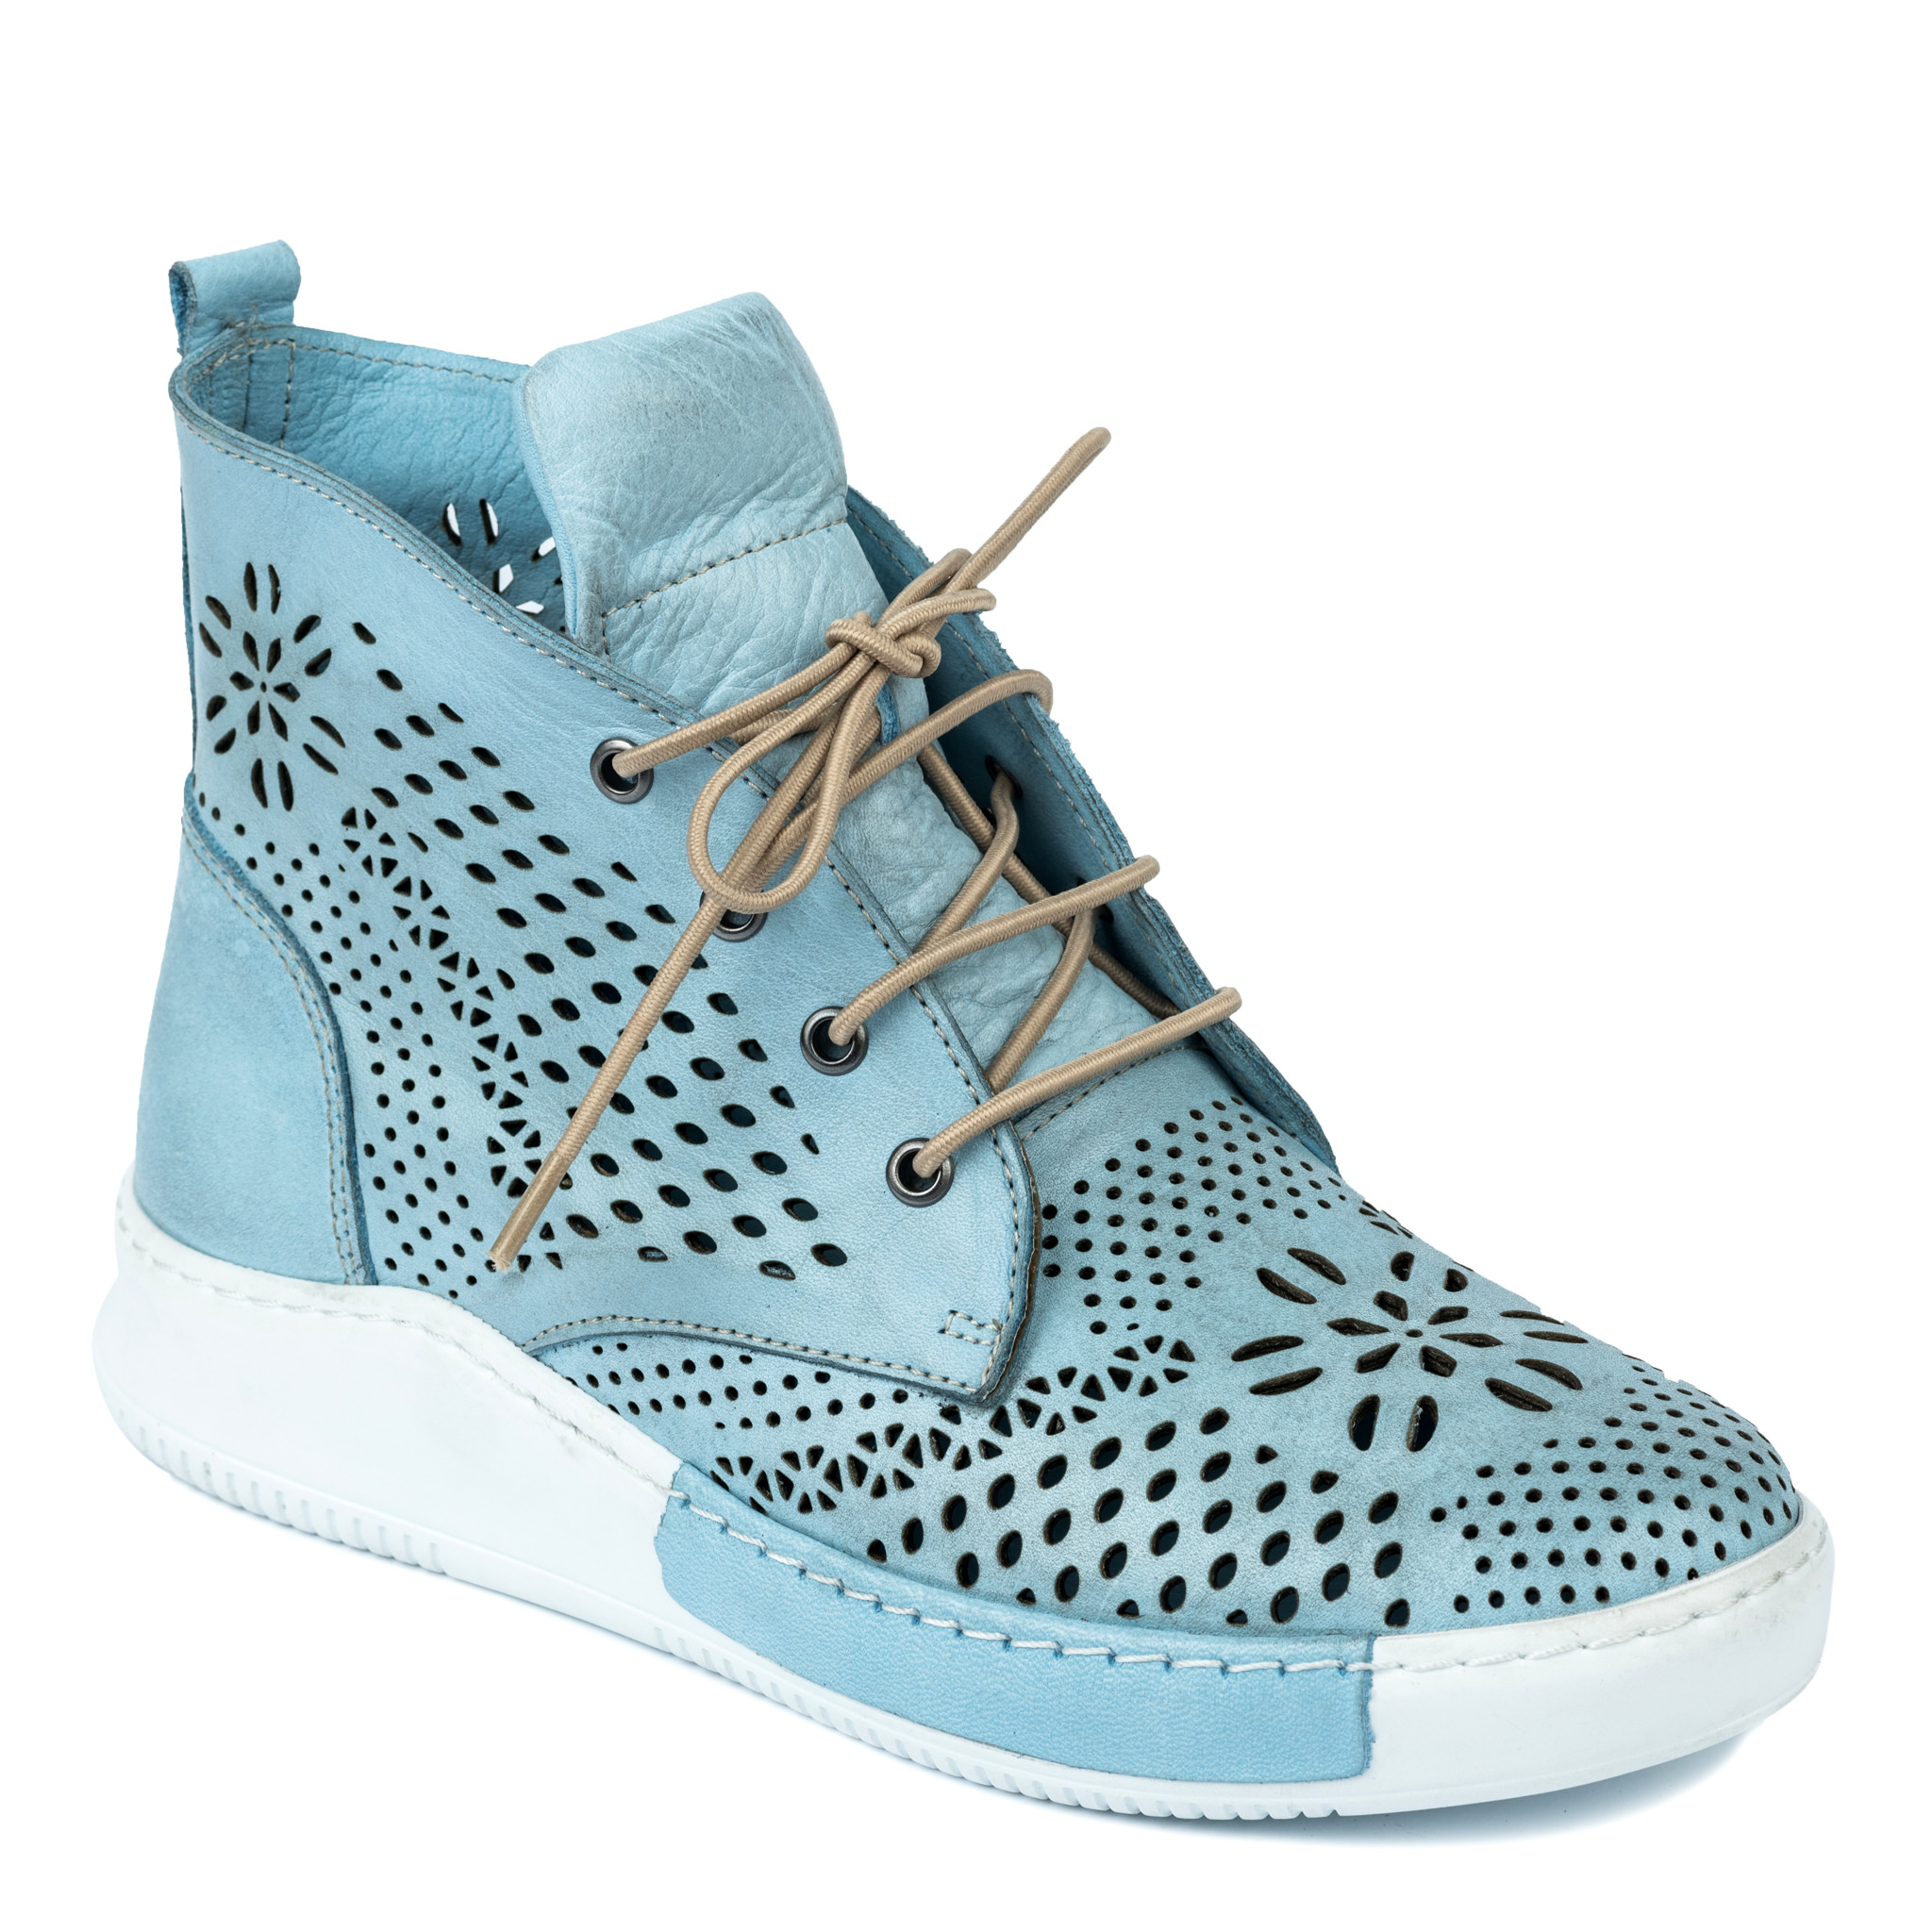 Women sneakers A234 - BLUE